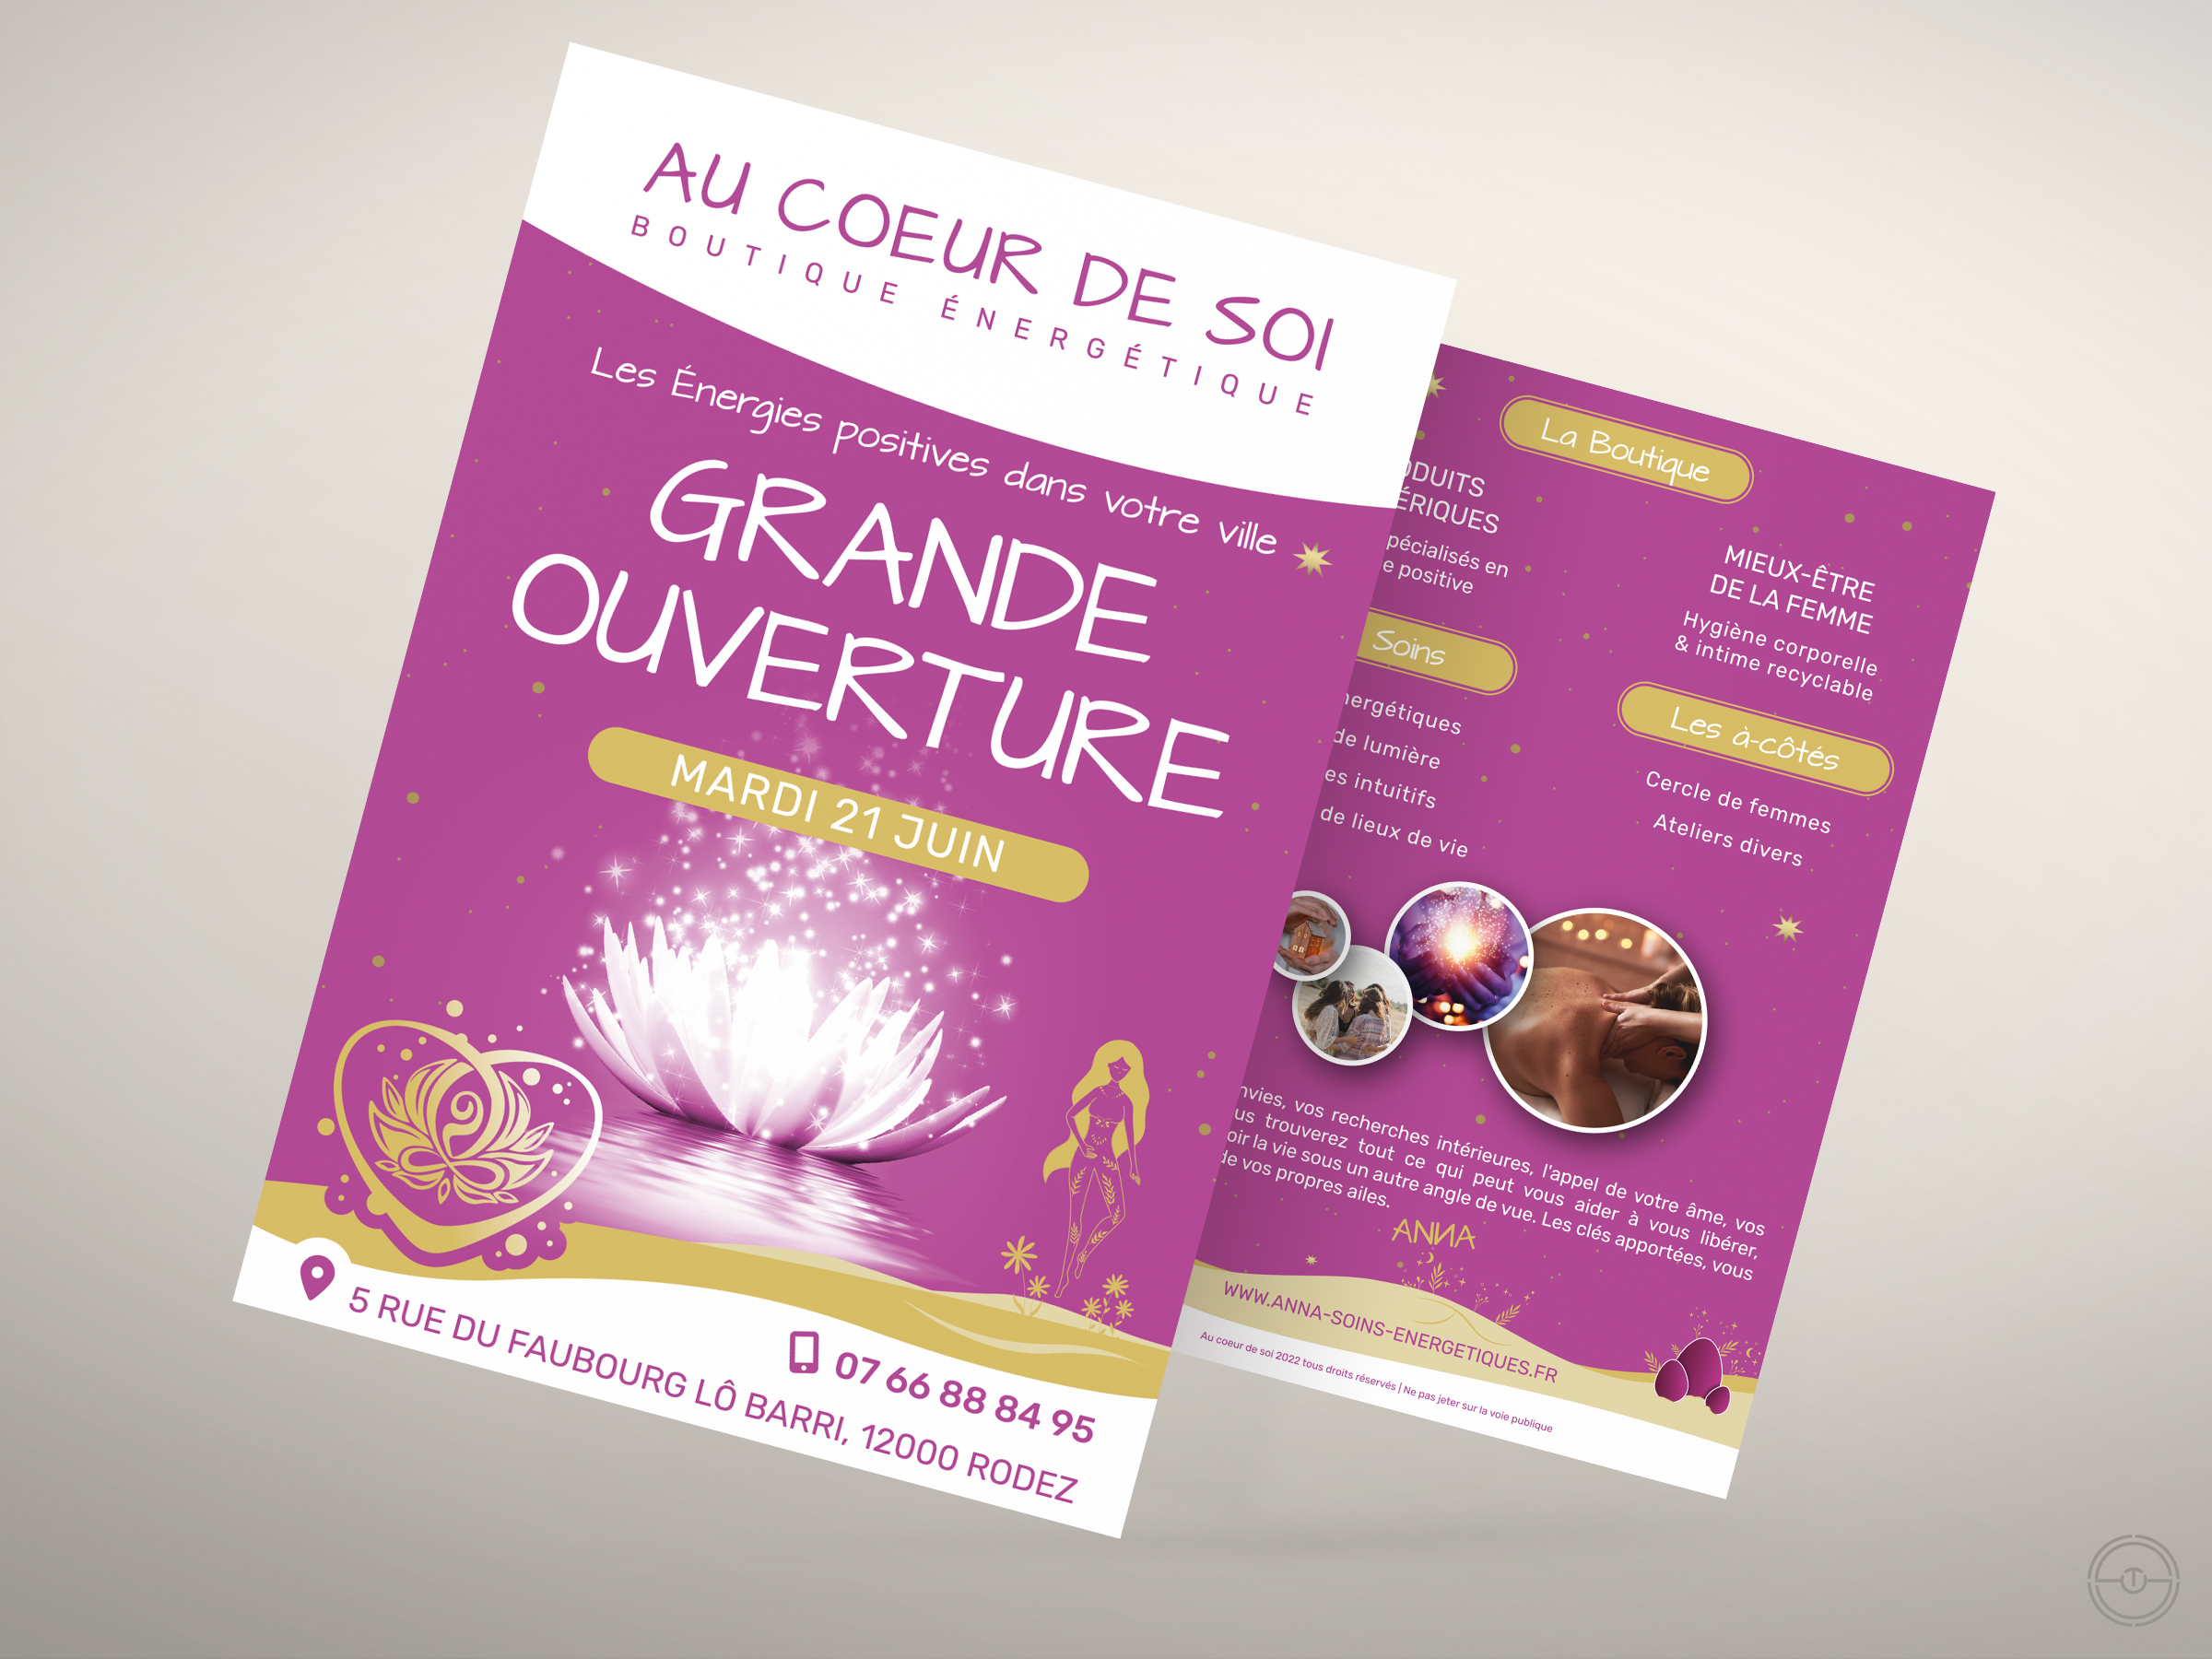 Présentation du flyer distribué le jour de l'ouverture de la boutique ésotérique de Rodez